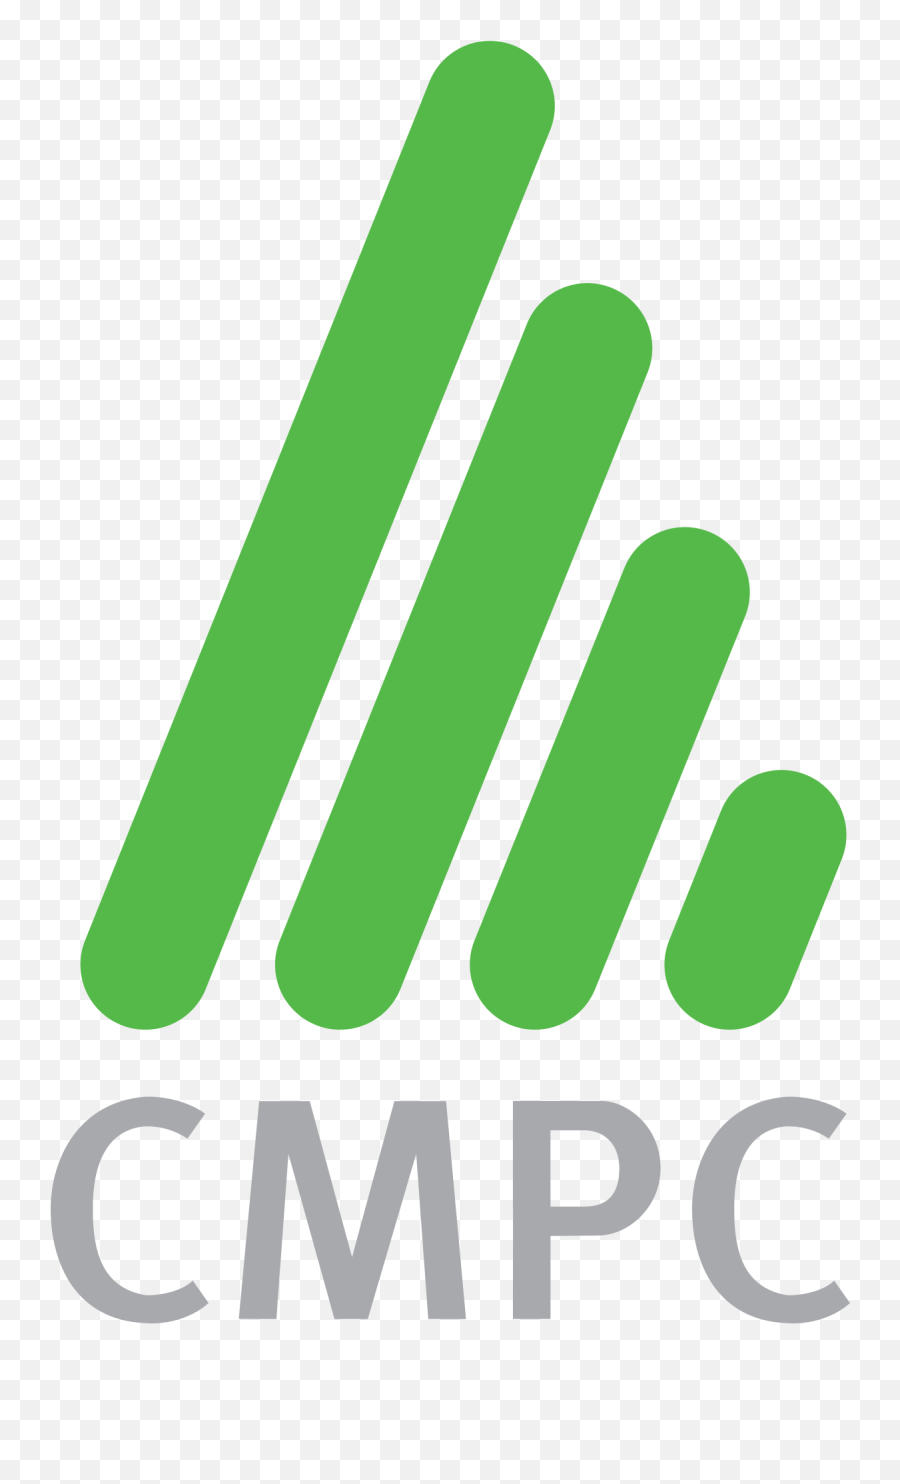 Cmpc Logos Emoji,Esp Logos